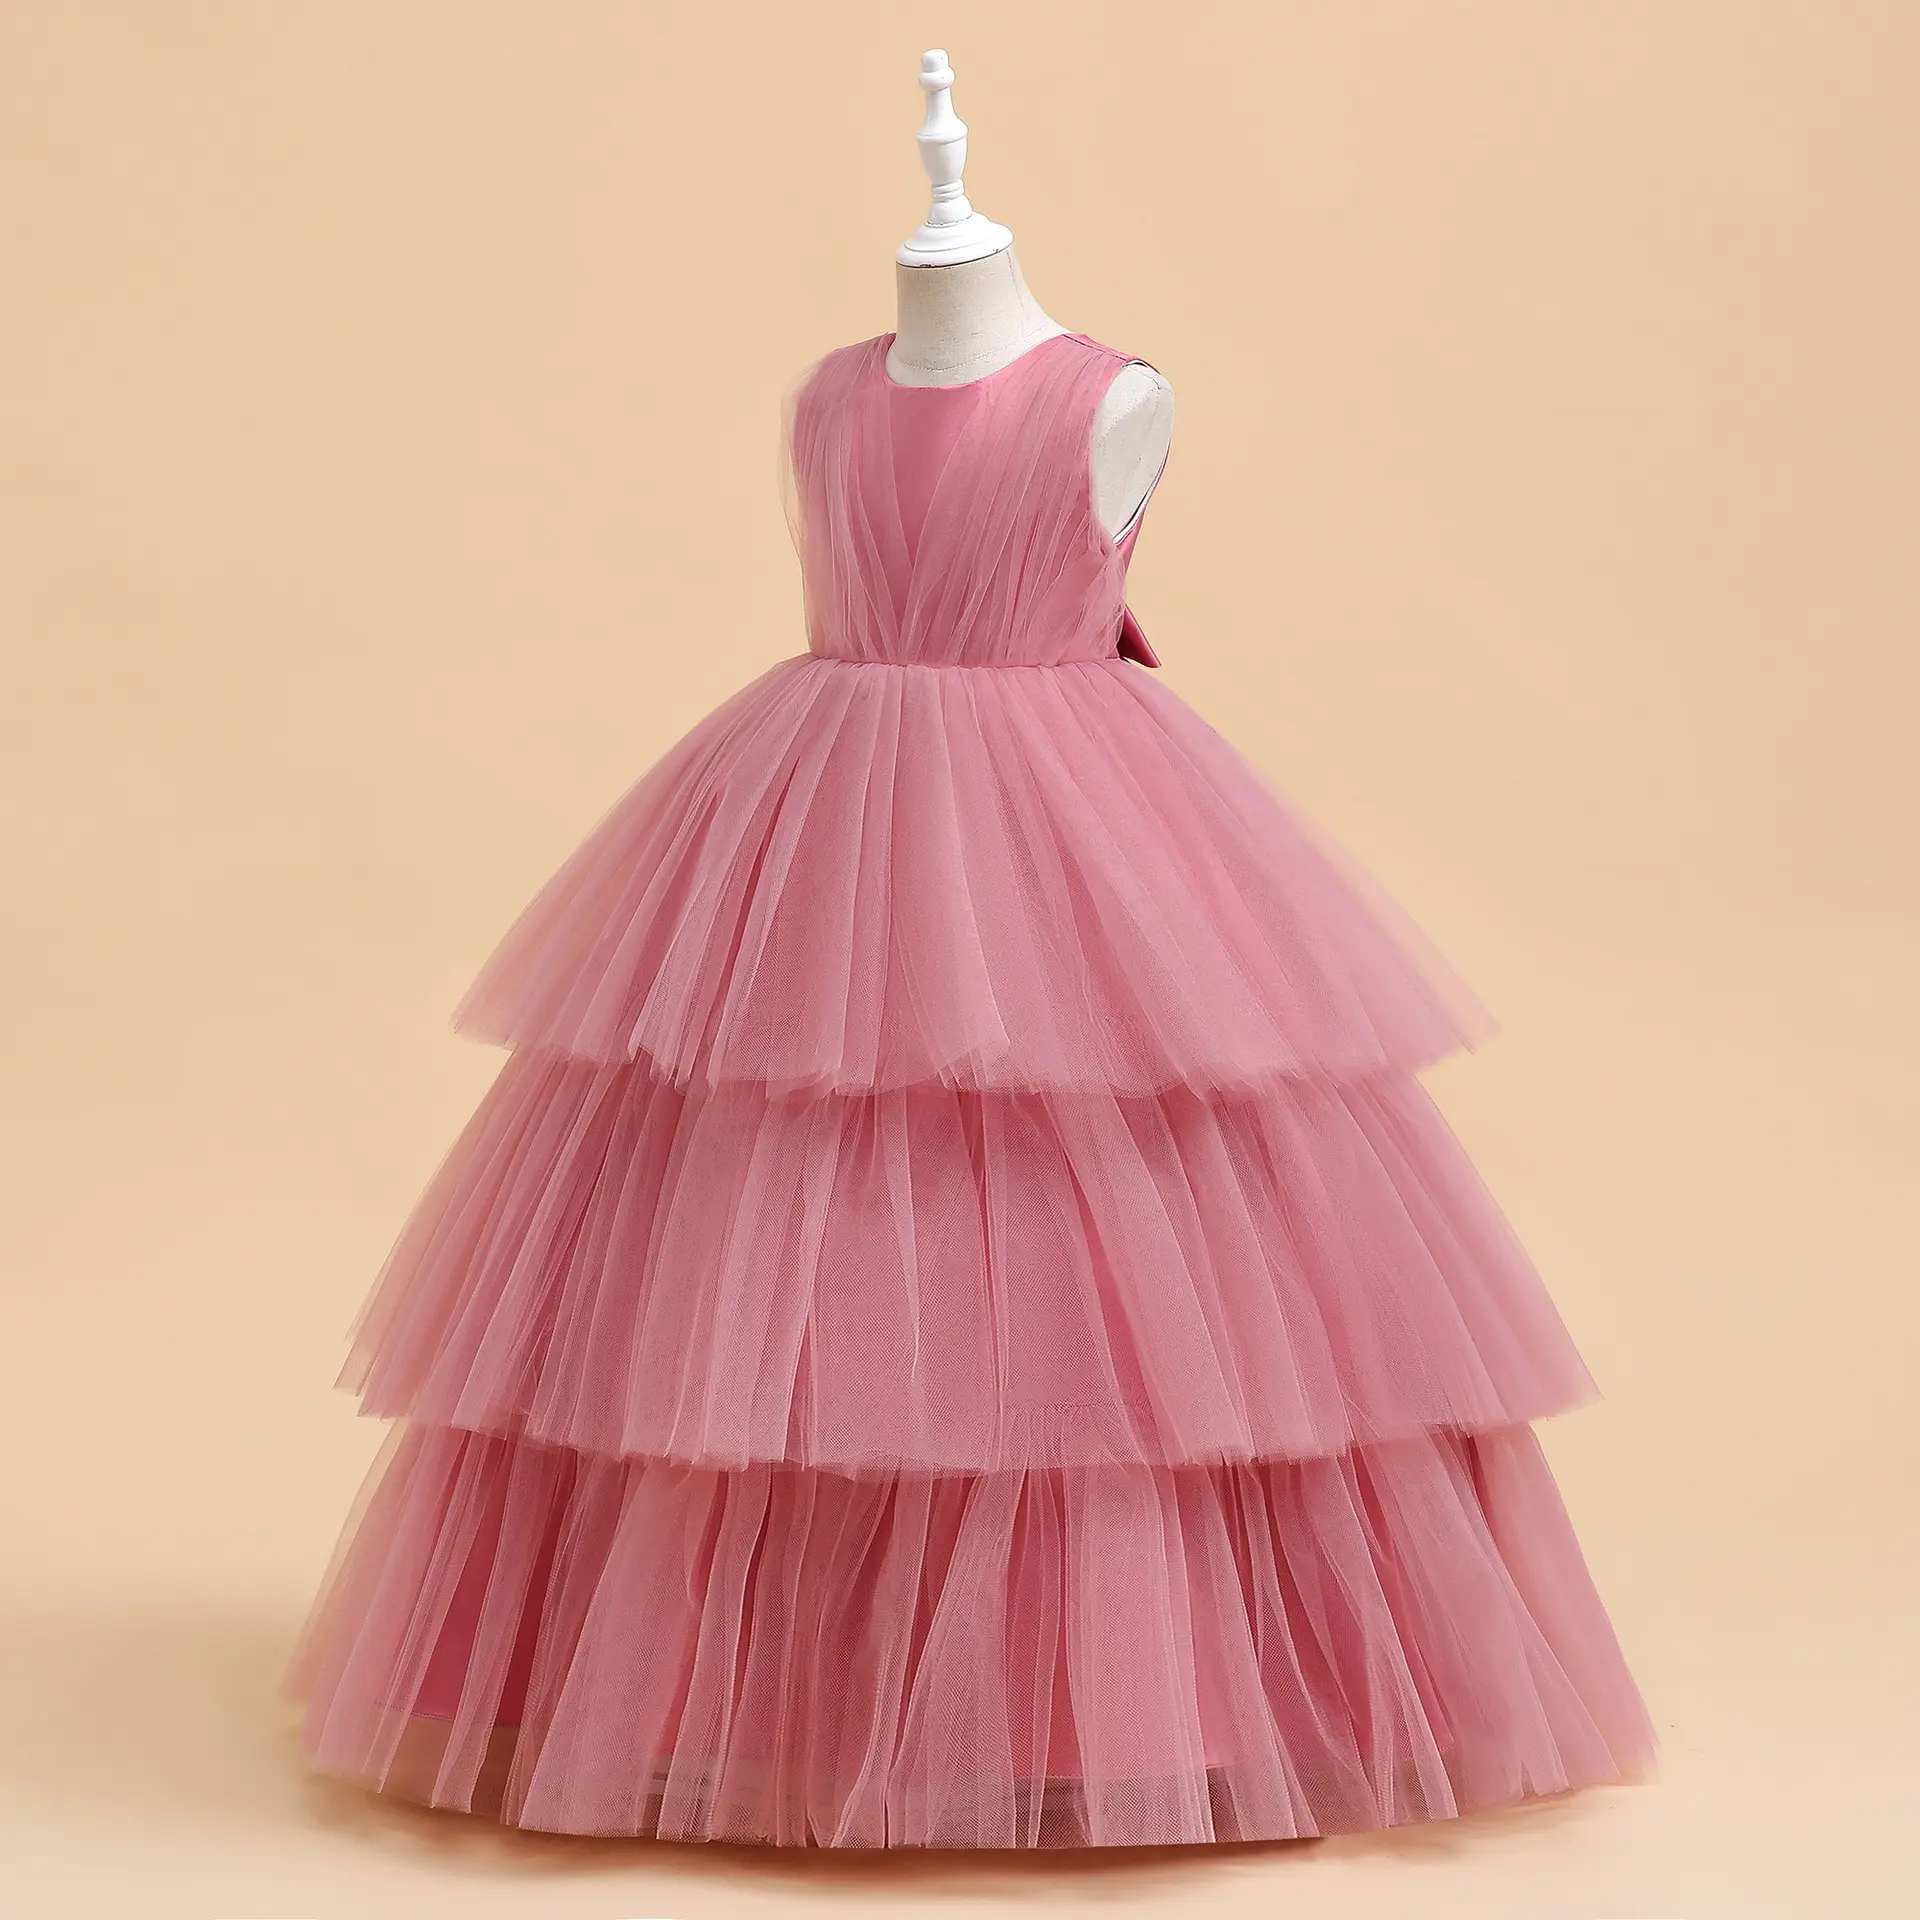 أزياء غربية صلبة بيضاء وردية حمراء للفتيات الصغيرات فستان توتو ملابس الأميرة تول فساتين شبكية